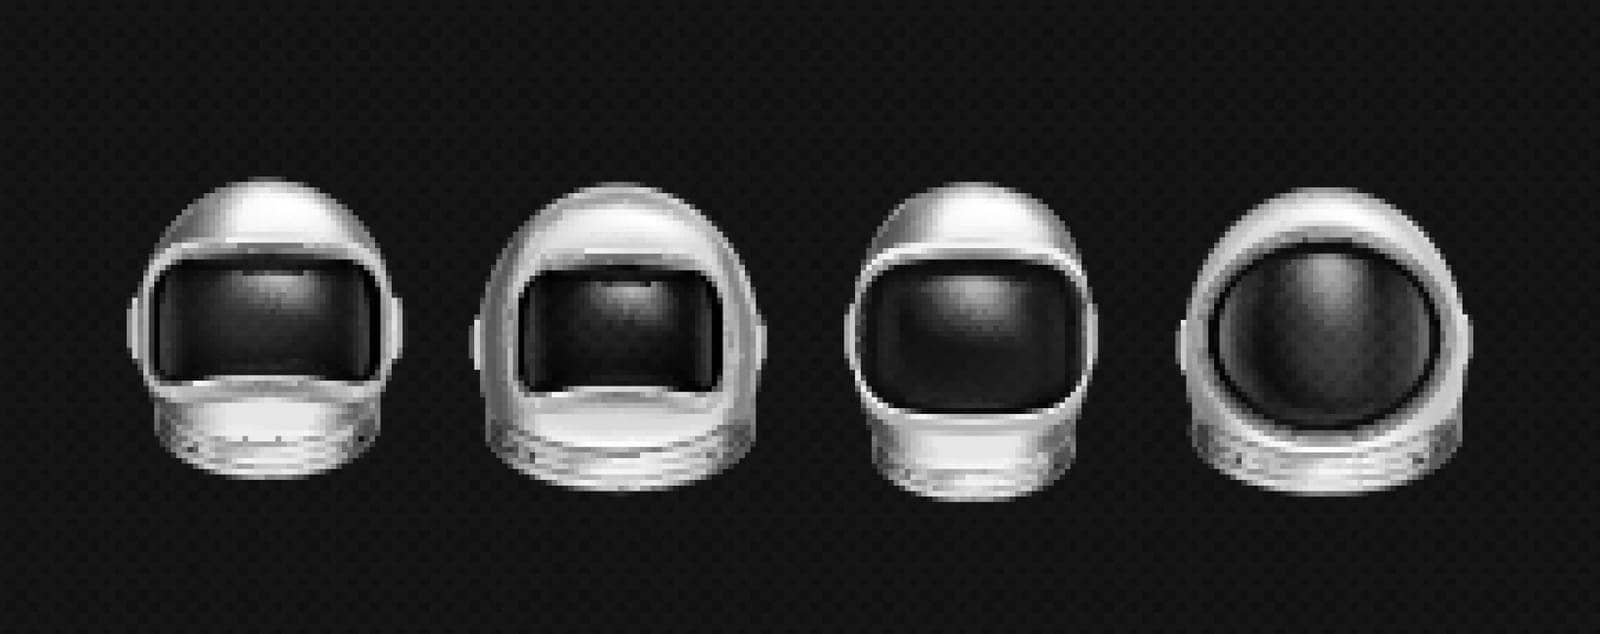 Astronaut helmets, cosmonaut suit mask by upklyak